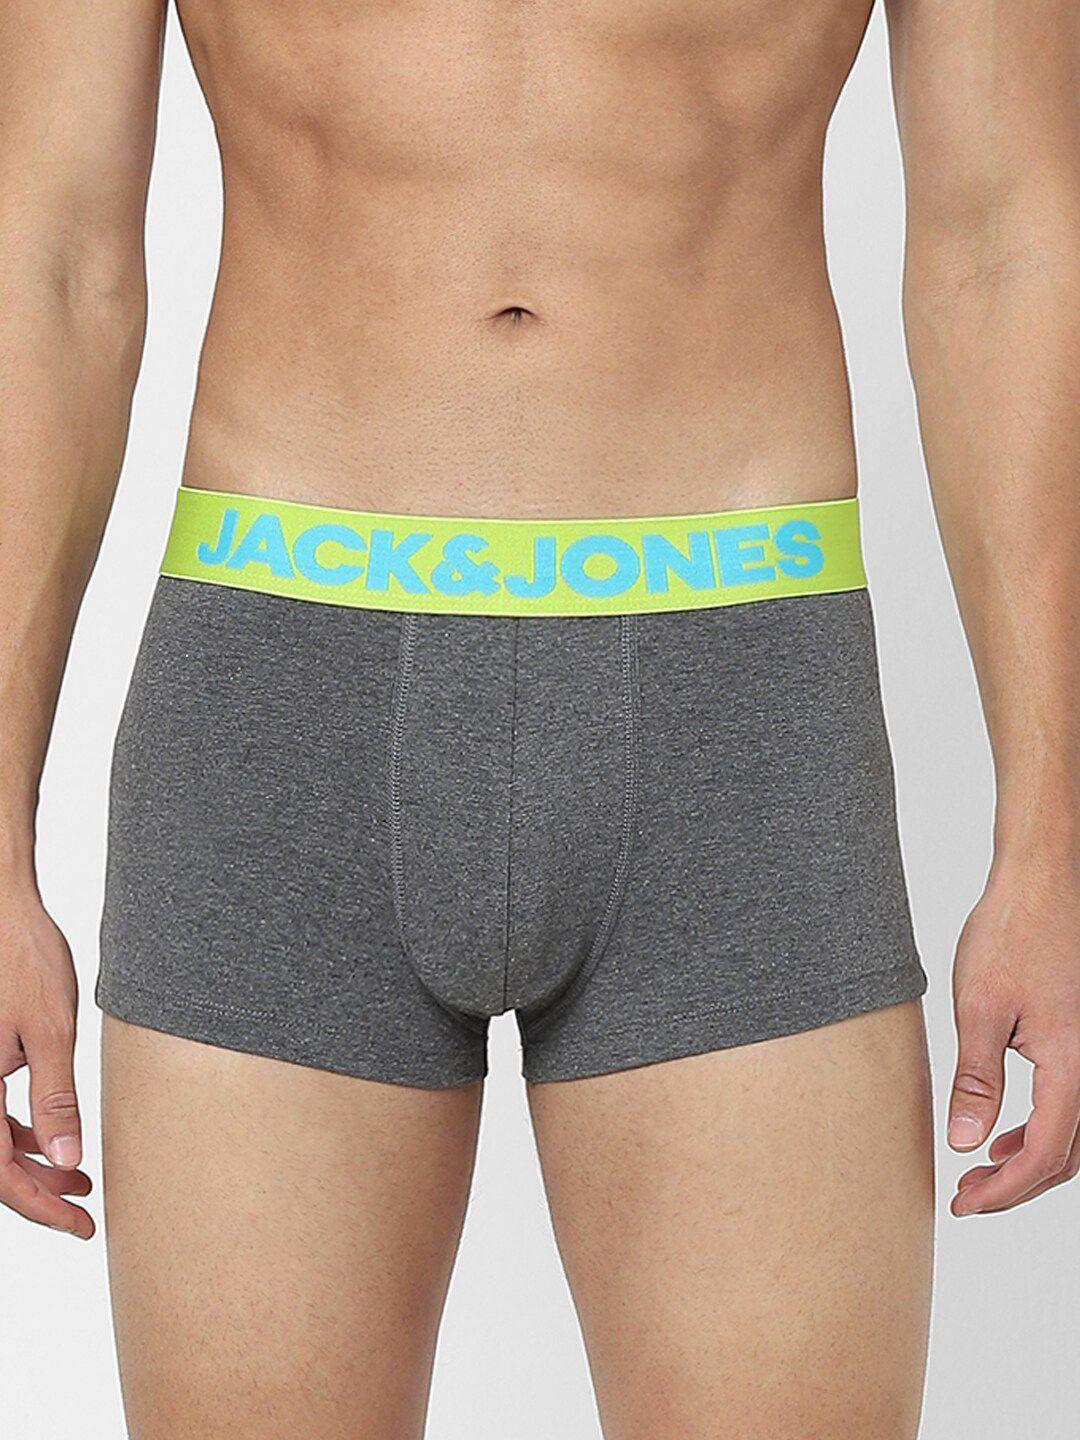 jack-&-jones-men-grey-solid-cotton-trunks-116799502